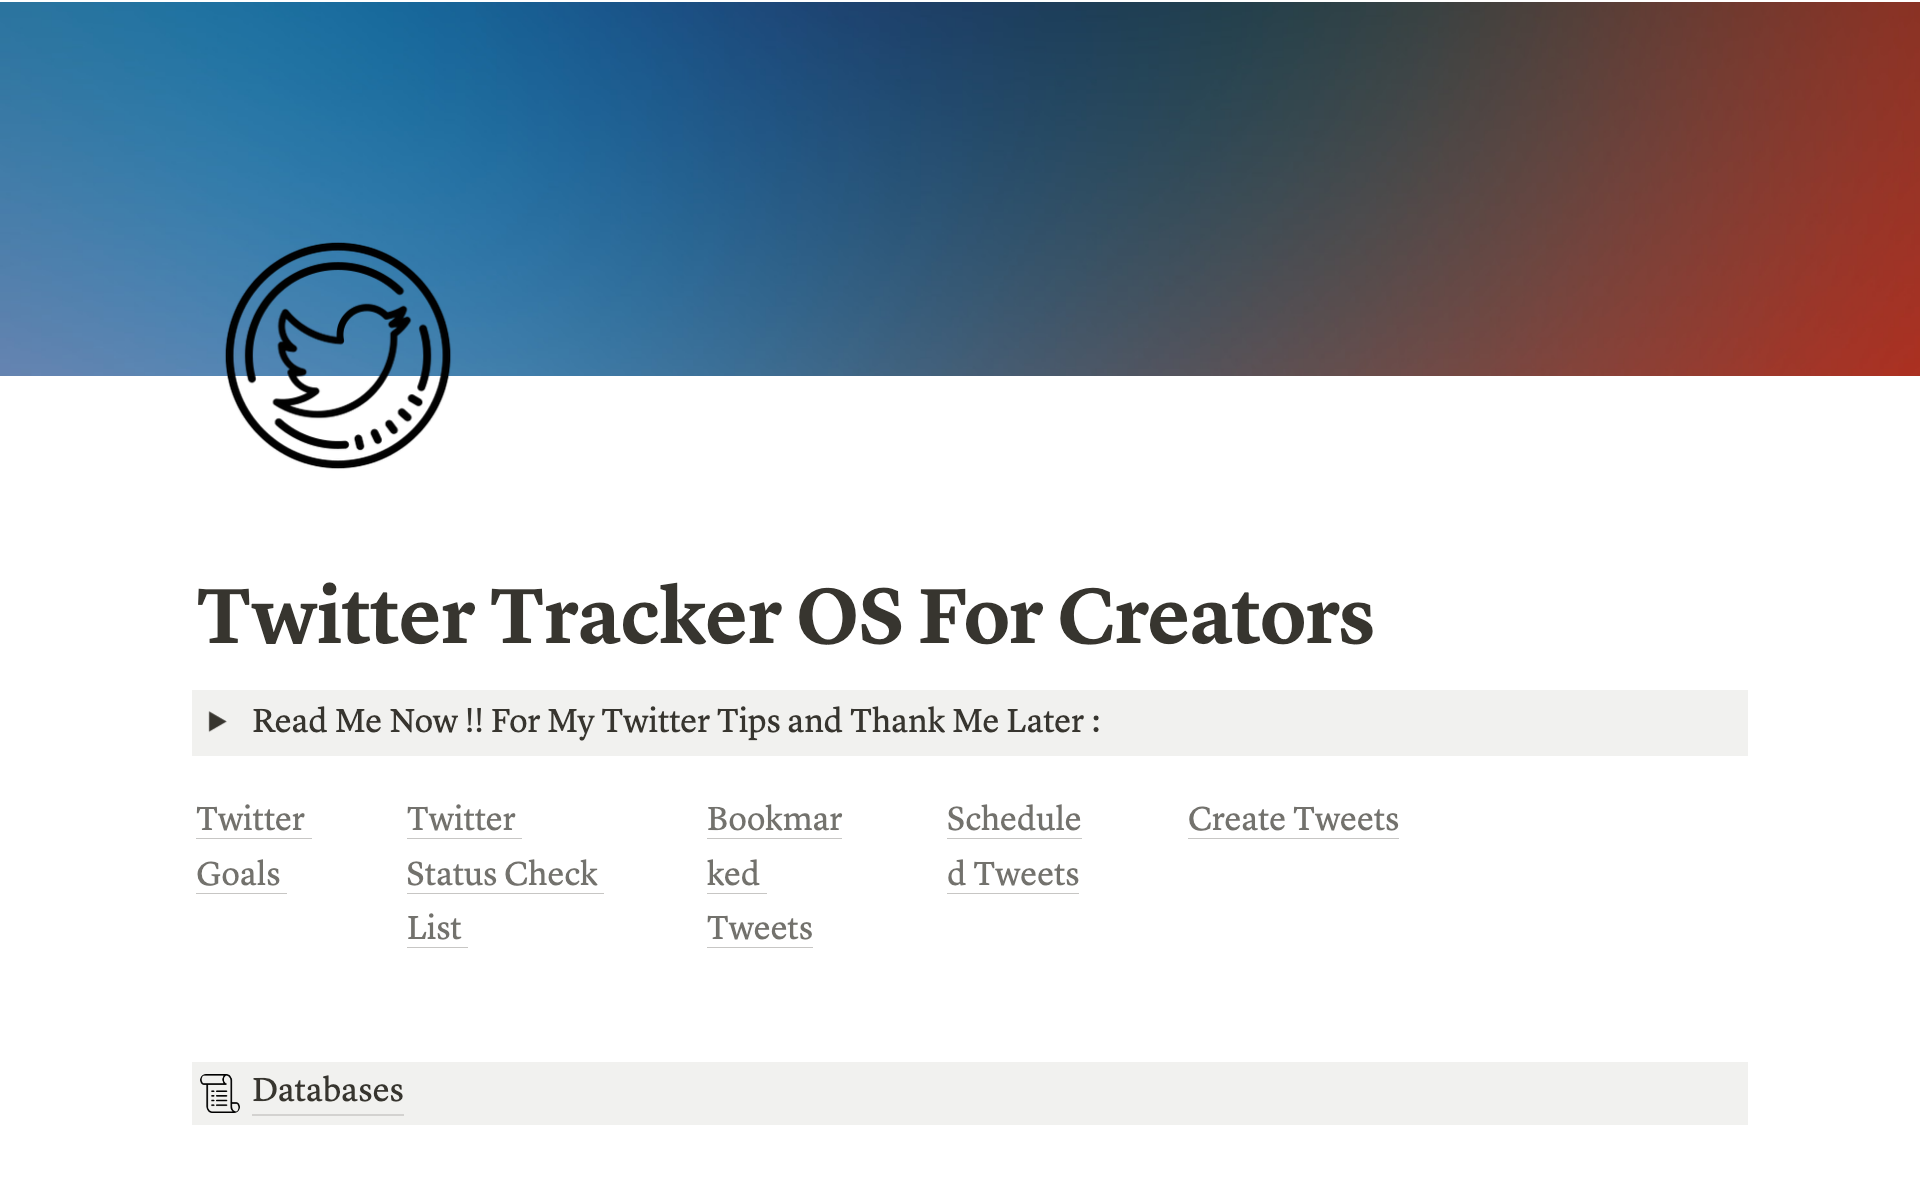 Uma prévia do modelo para Twitter OS For Creators